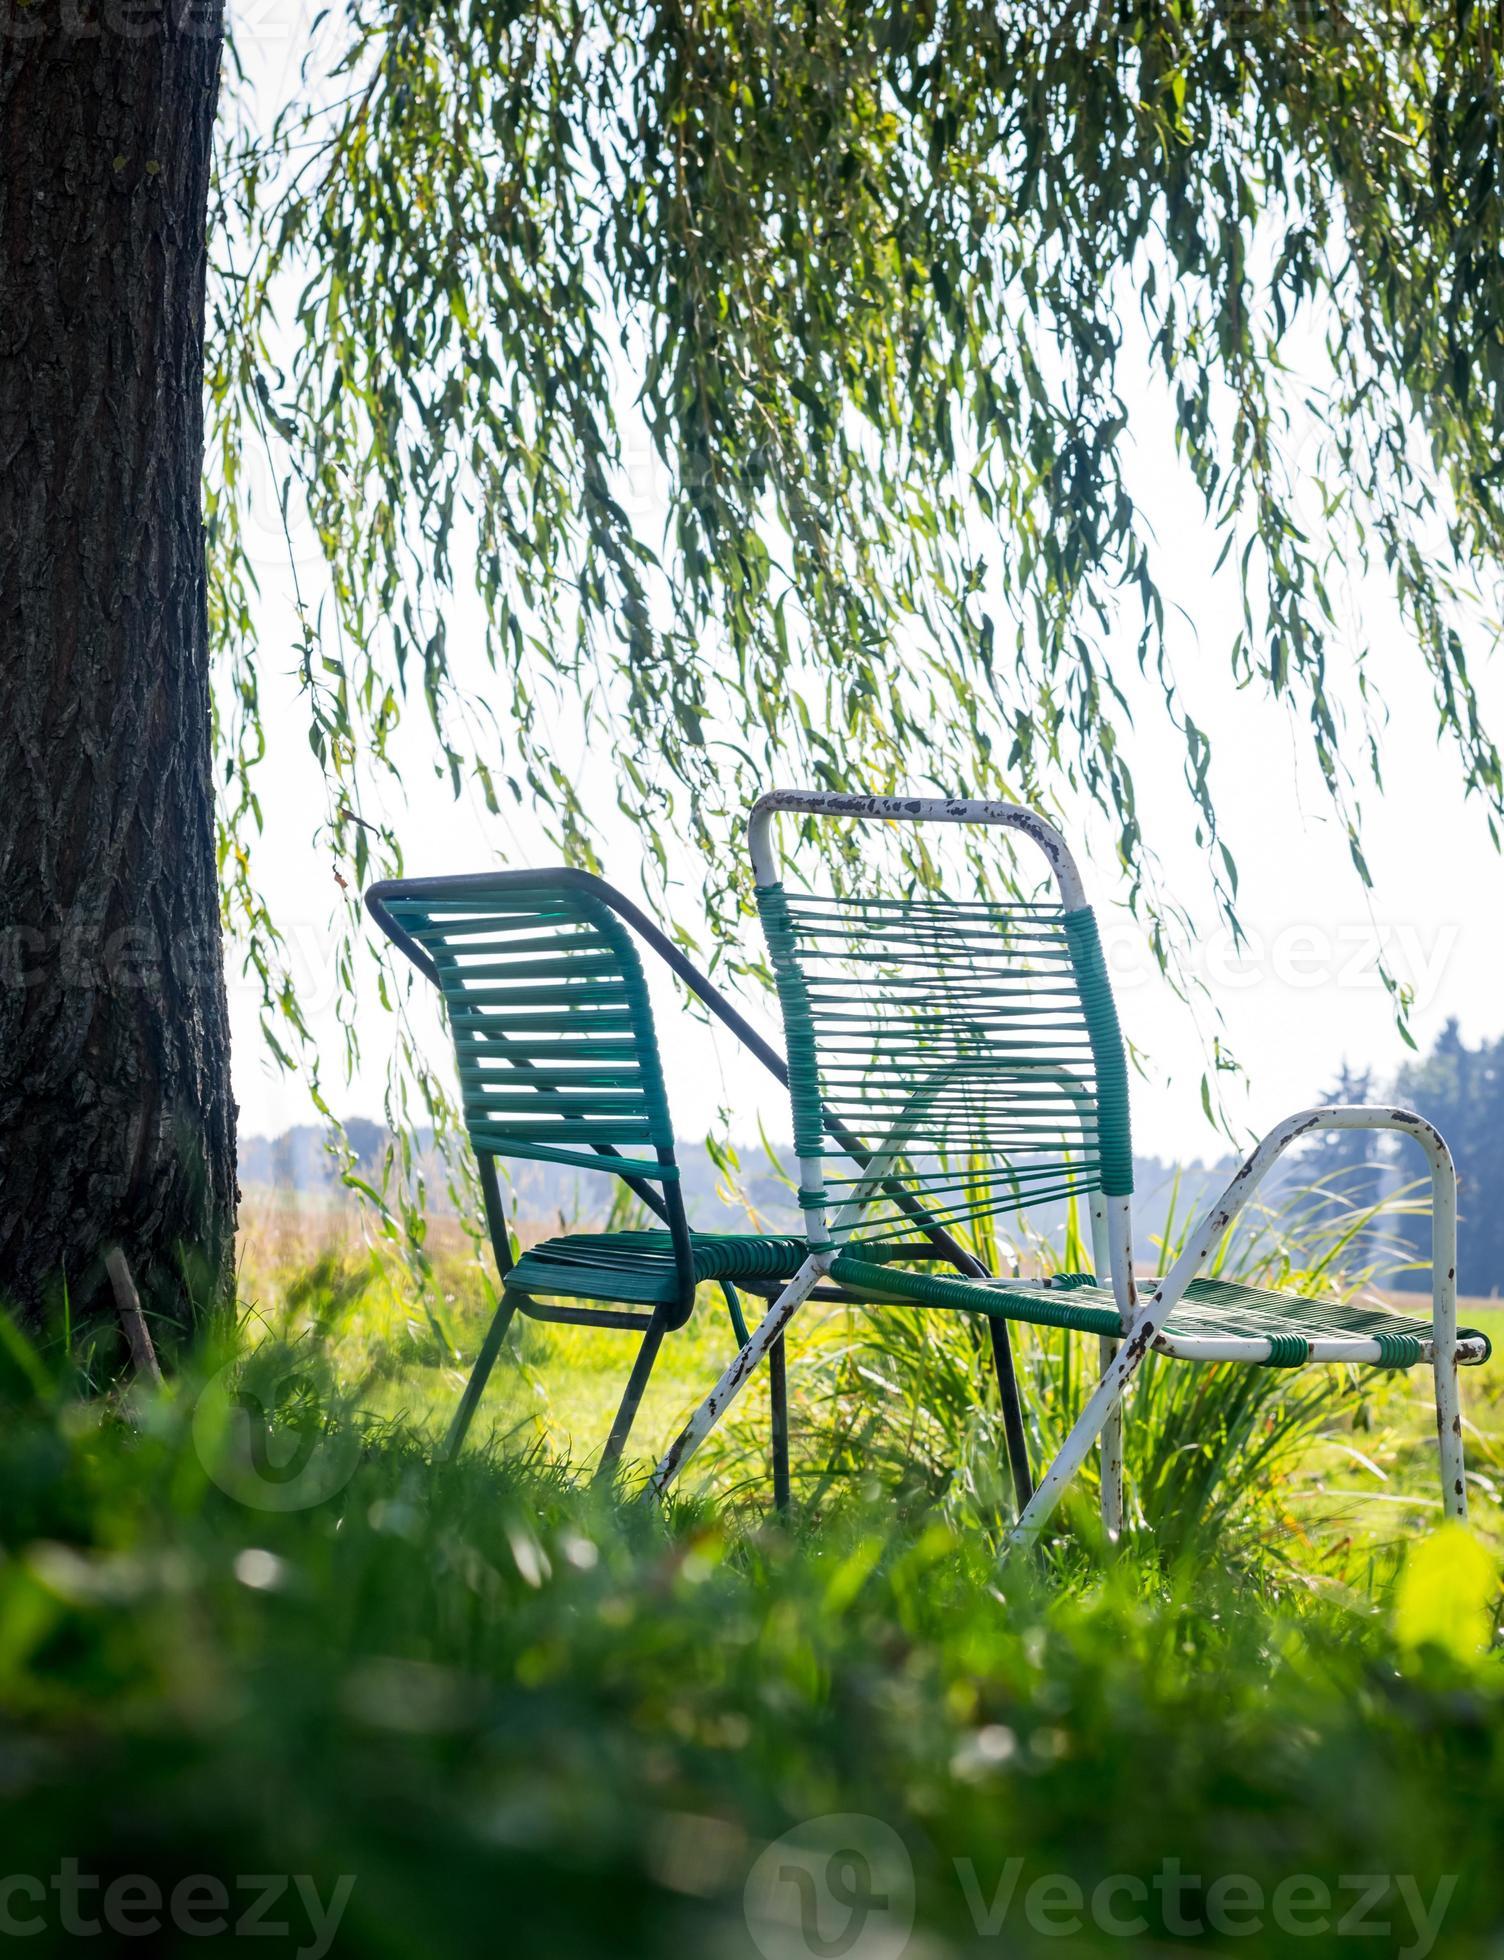 Armoedig zege sieraden zomerstoelen in de tuin 8999890 Stockfoto